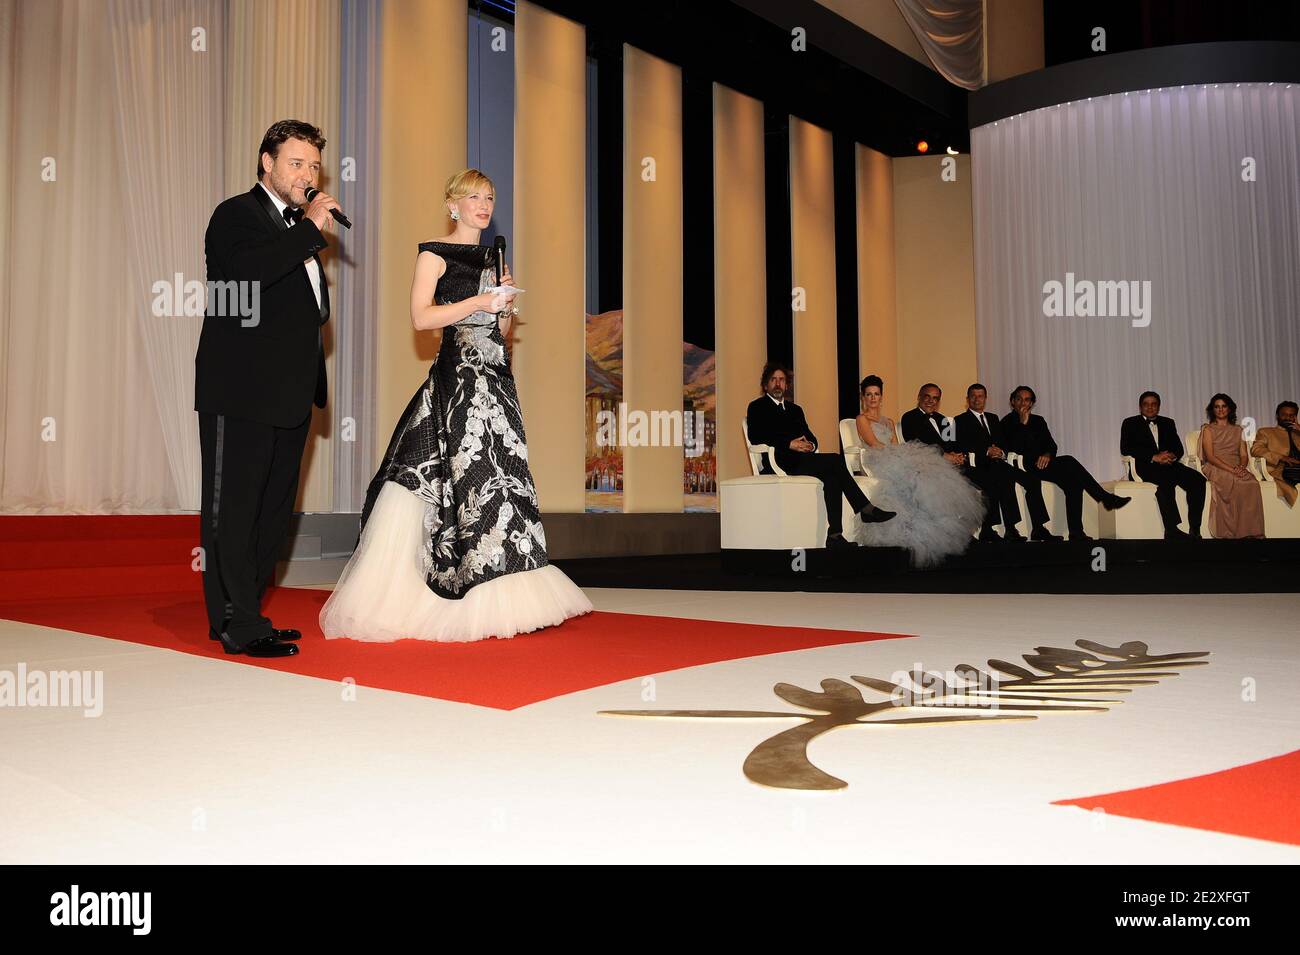 Russell Crowe und Cate Blanchett bei der Premiere von Ridley Scotts Robin Hood, die während der Eröffnungsfeier der 63. Filmfestspiele von Cannes am 12. Mai 2010 in Cannes, Südfrankreich, außer Konkurrenz präsentiert wurde. Foto von Hahn-Nebinger-Orban/ABACAPRESS.COM Stockfoto